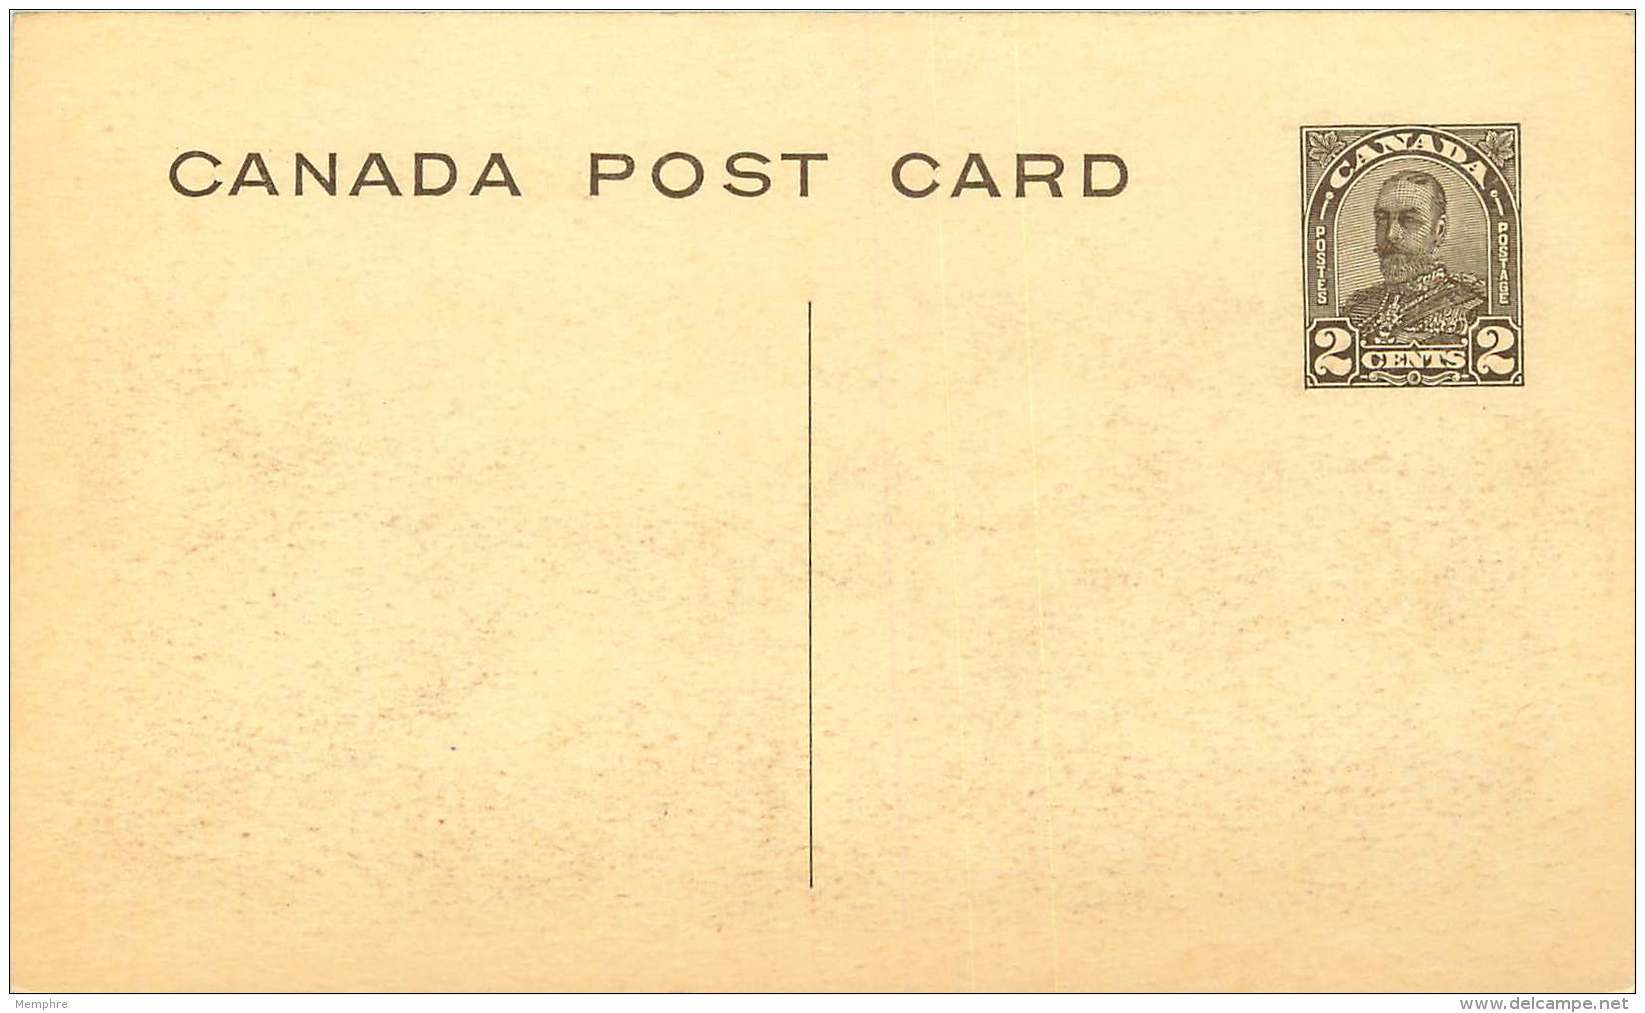 Sepia Illustrated Postcard    Okanagan Valley  B.C.    # 506   Unused - 1903-1954 Kings